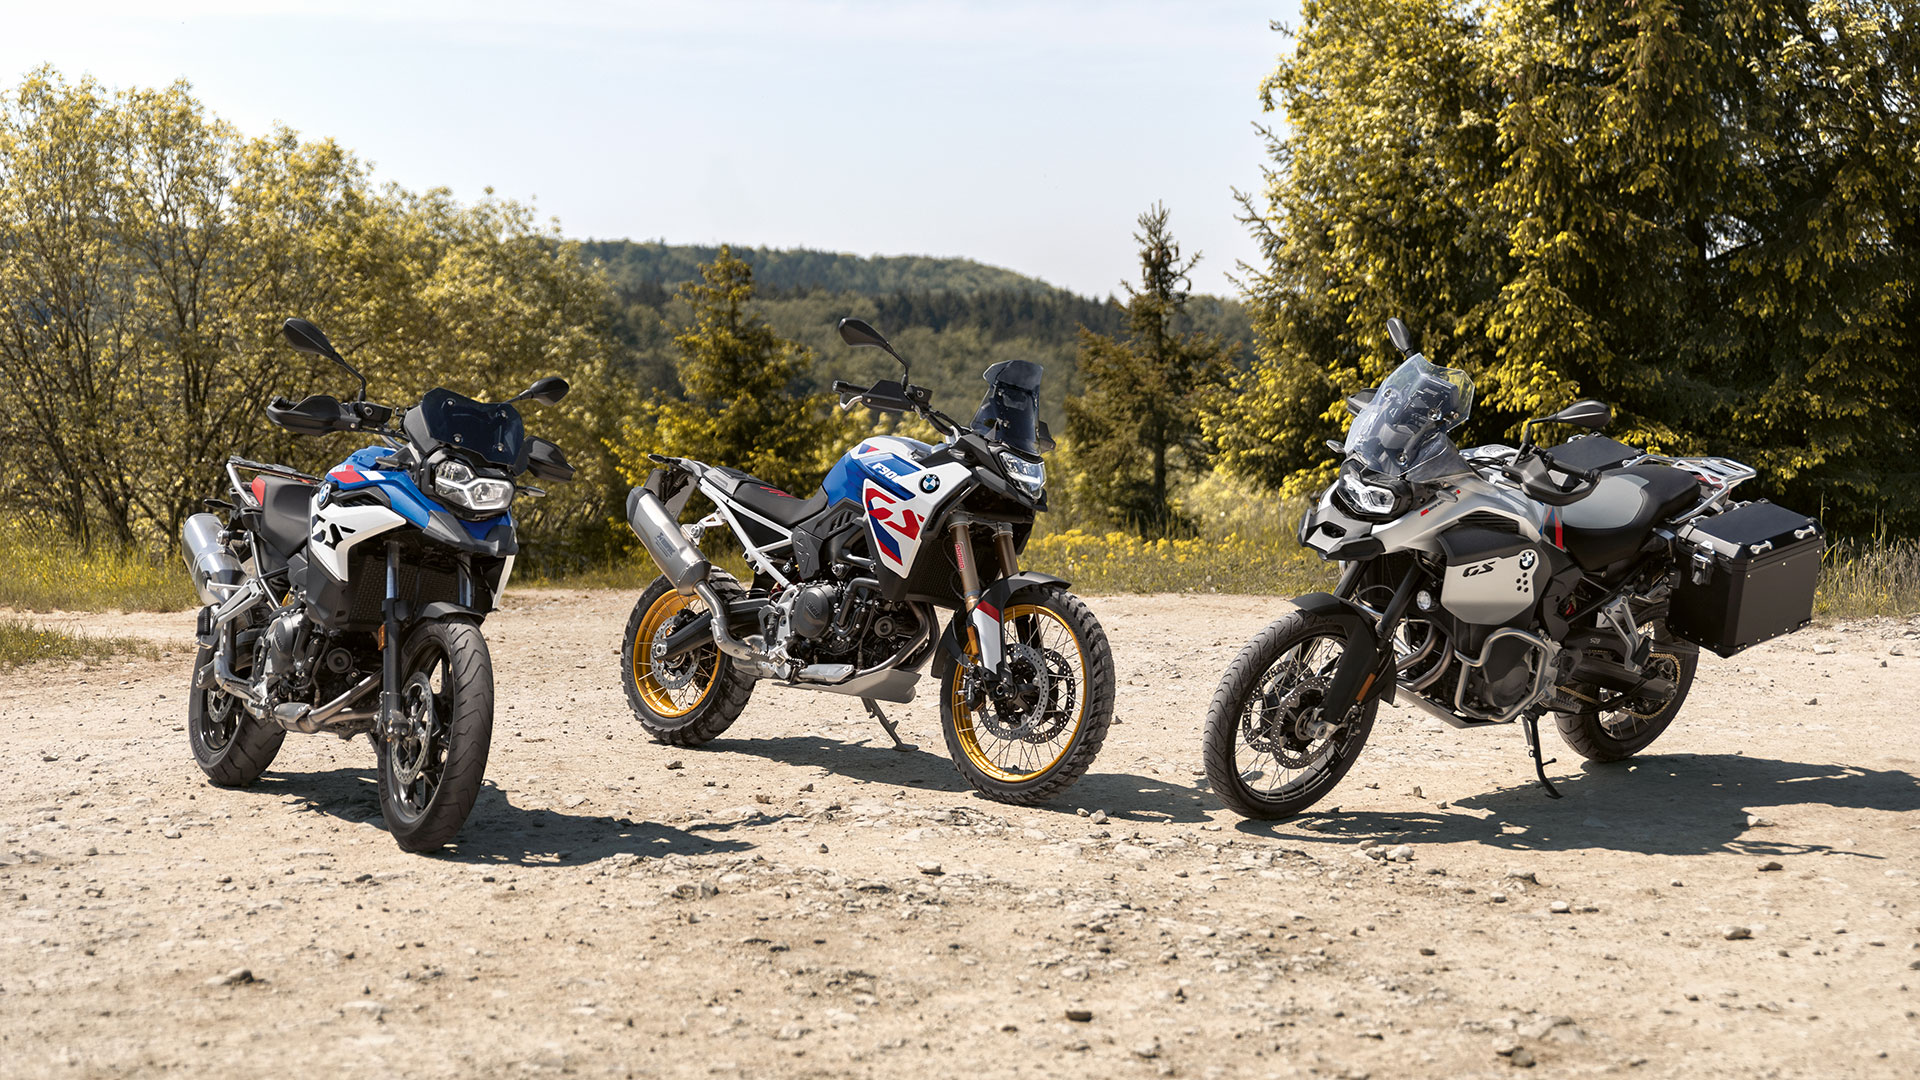 Las motos trail BMW F 900 GS y BMW F 900 GS Adventure para el carnet A2 revelan sus precios